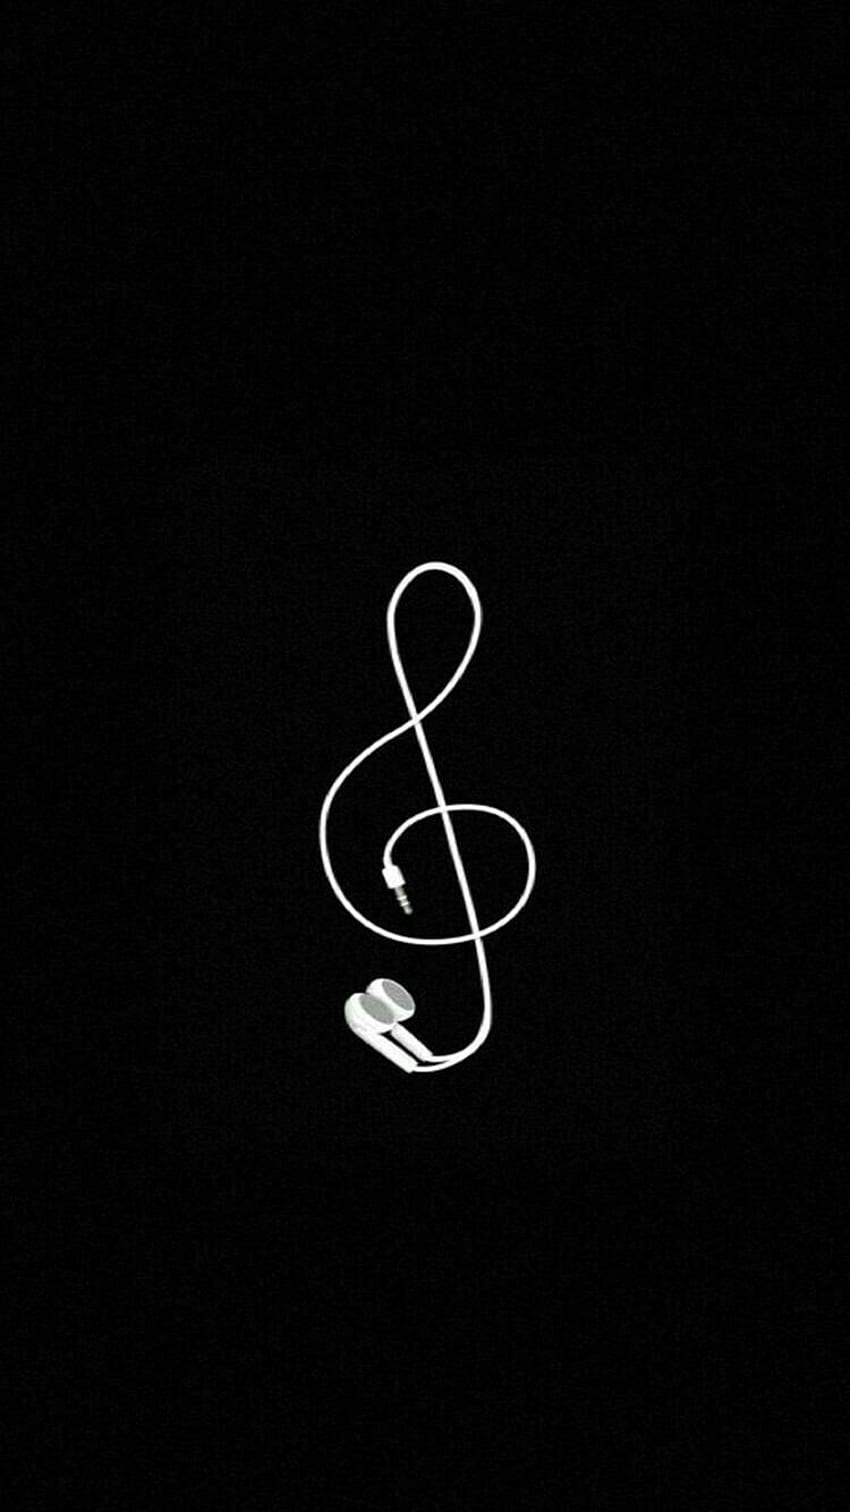 Auriculares Simple Music con clave de sol en blanco y negro iPhone, Android fondo de pantalla del teléfono